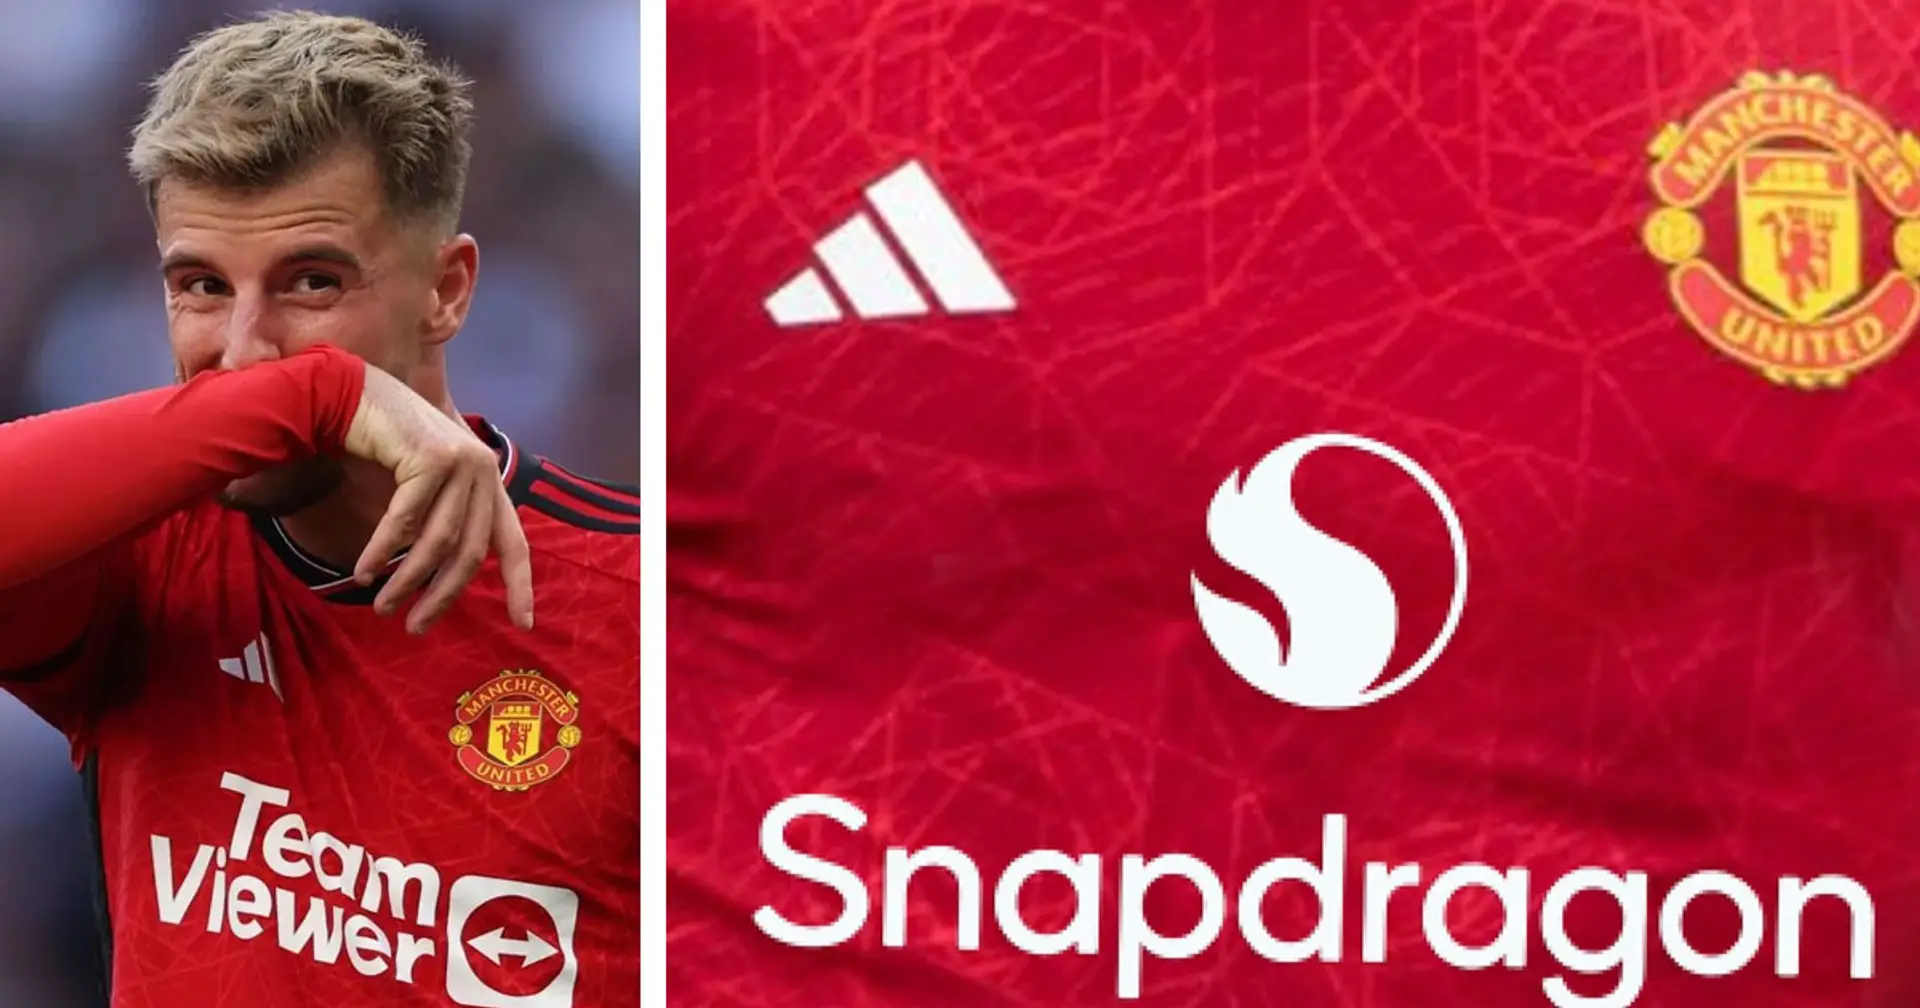 Sponsorizzazione record per il Manchester United: le cifre dell'accordo con Snapdragon